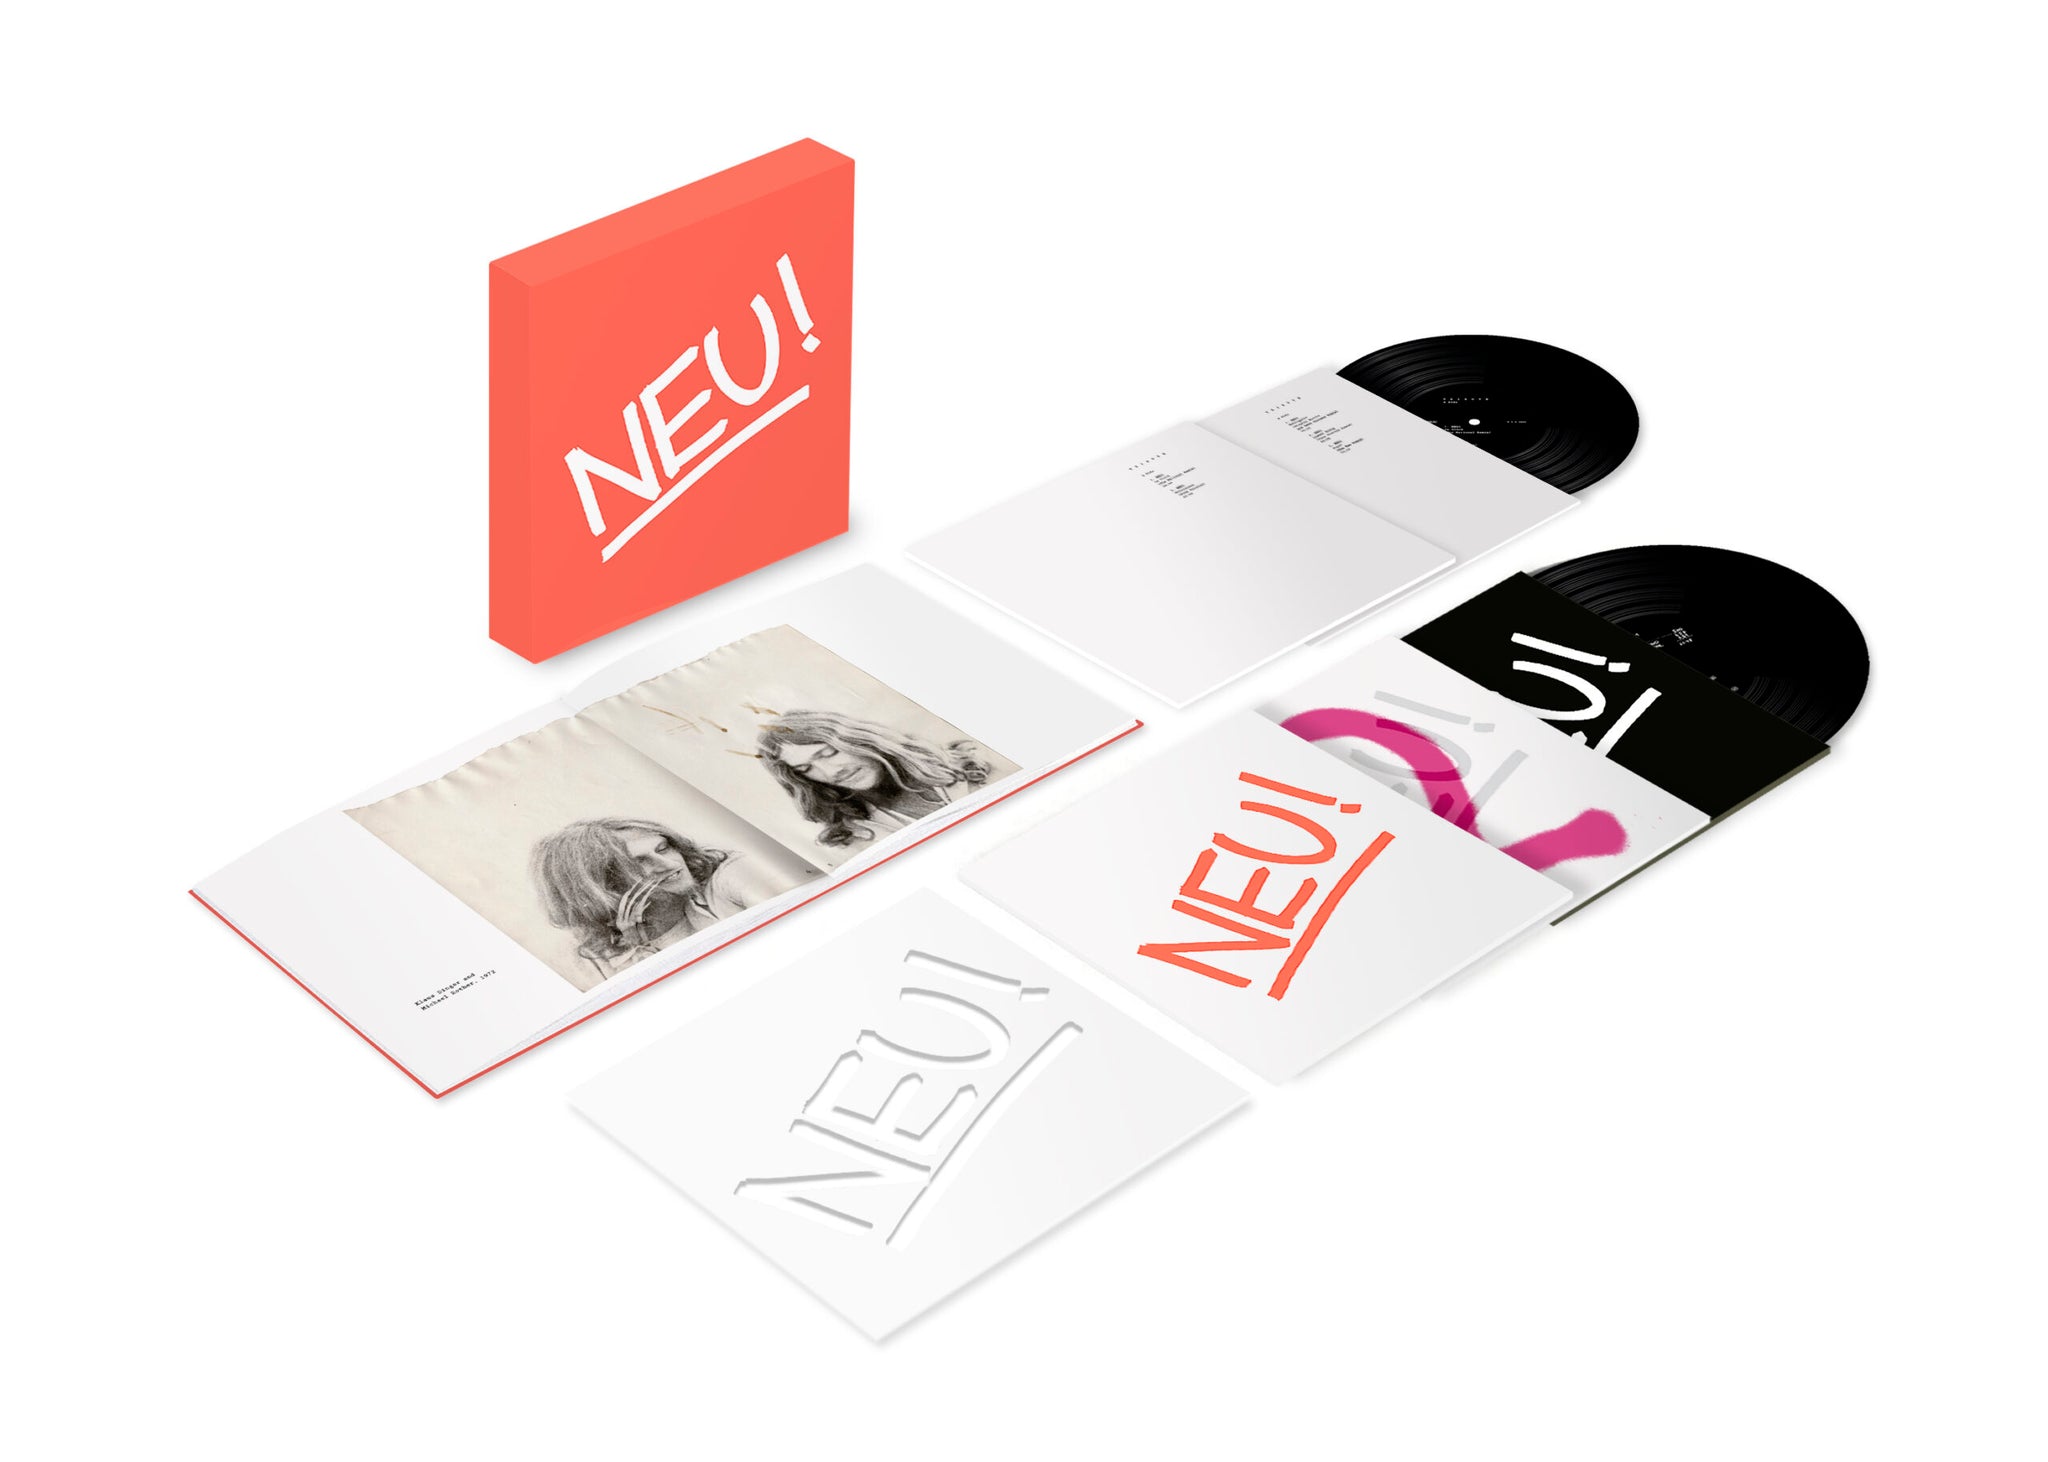 NEU! - 50! - 5LP - Vinyl Box Set